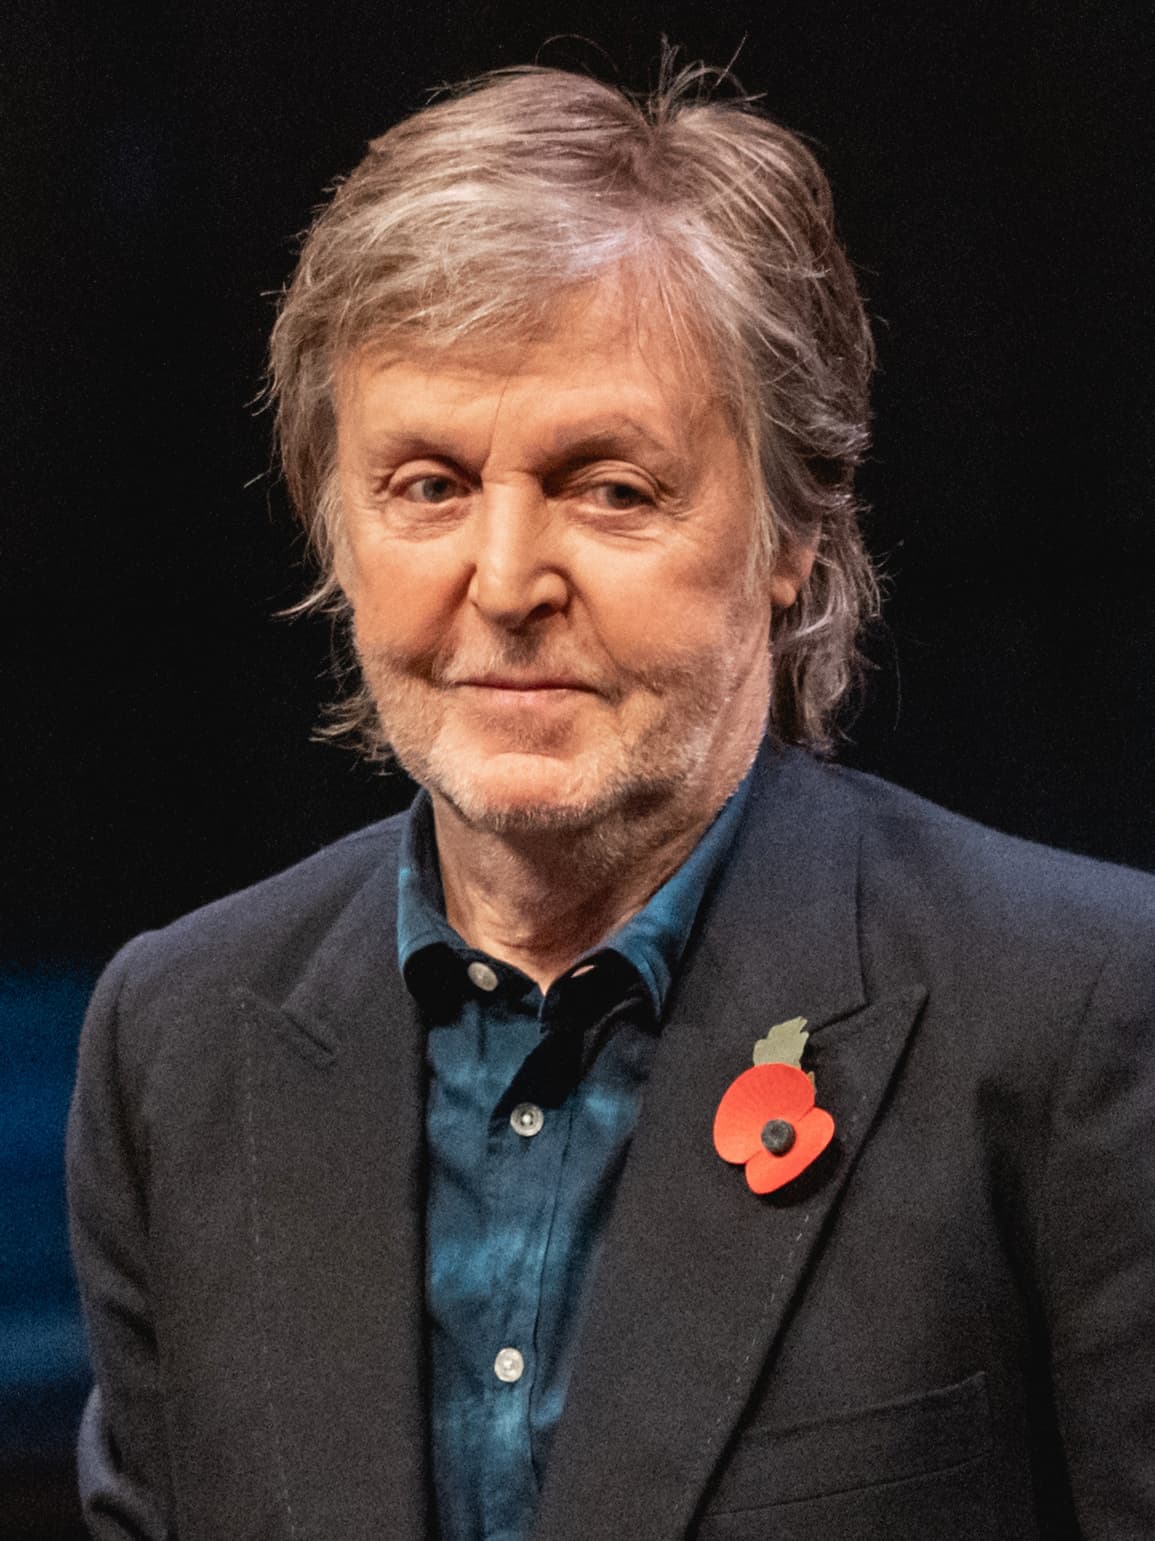 Paul McCartney in 2021